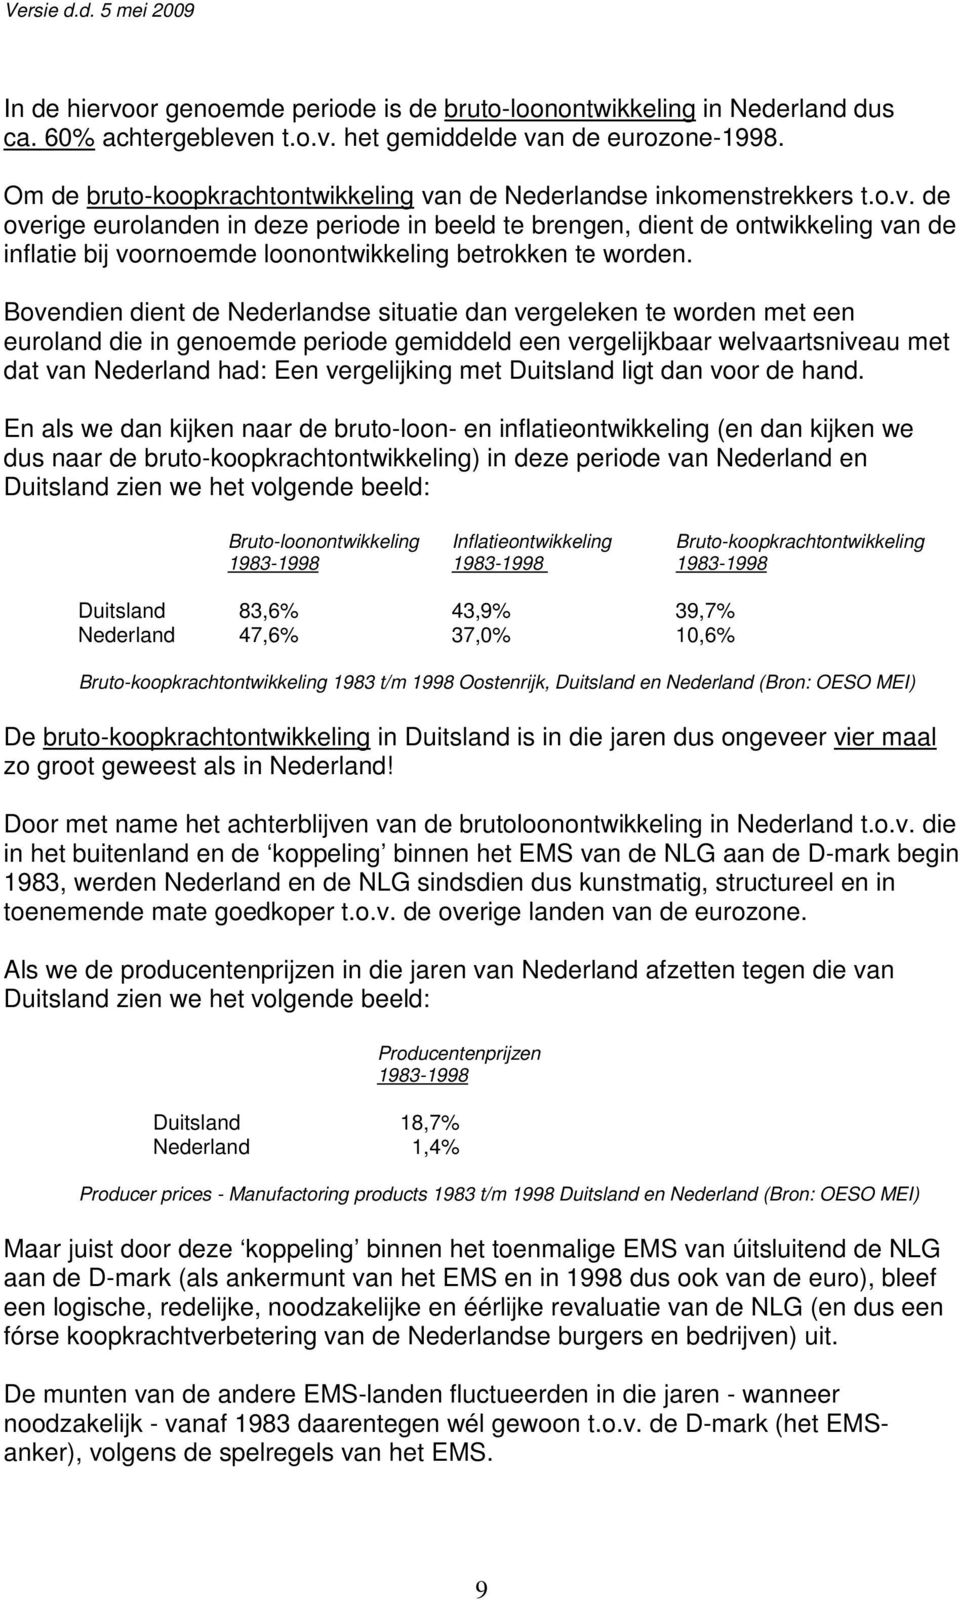 Bovendien dient de Nederlandse situatie dan vergeleken te worden met een euroland die in genoemde periode gemiddeld een vergelijkbaar welvaartsniveau met dat van Nederland had: Een vergelijking met